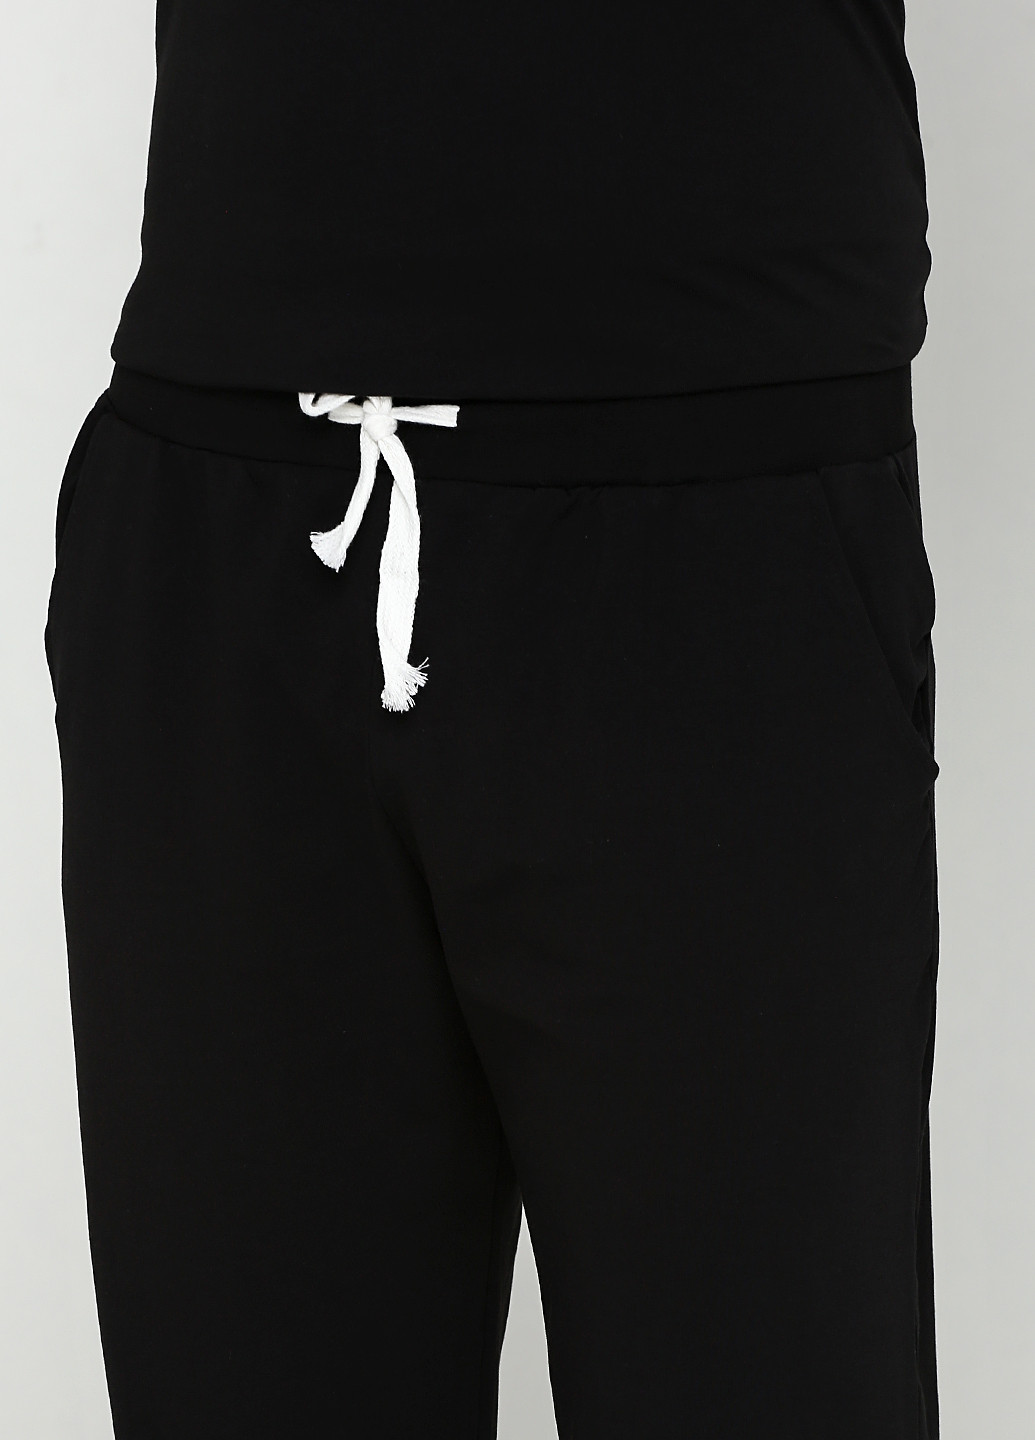 Черный демисезонный комплект (футболка, брюки) Ipektenim